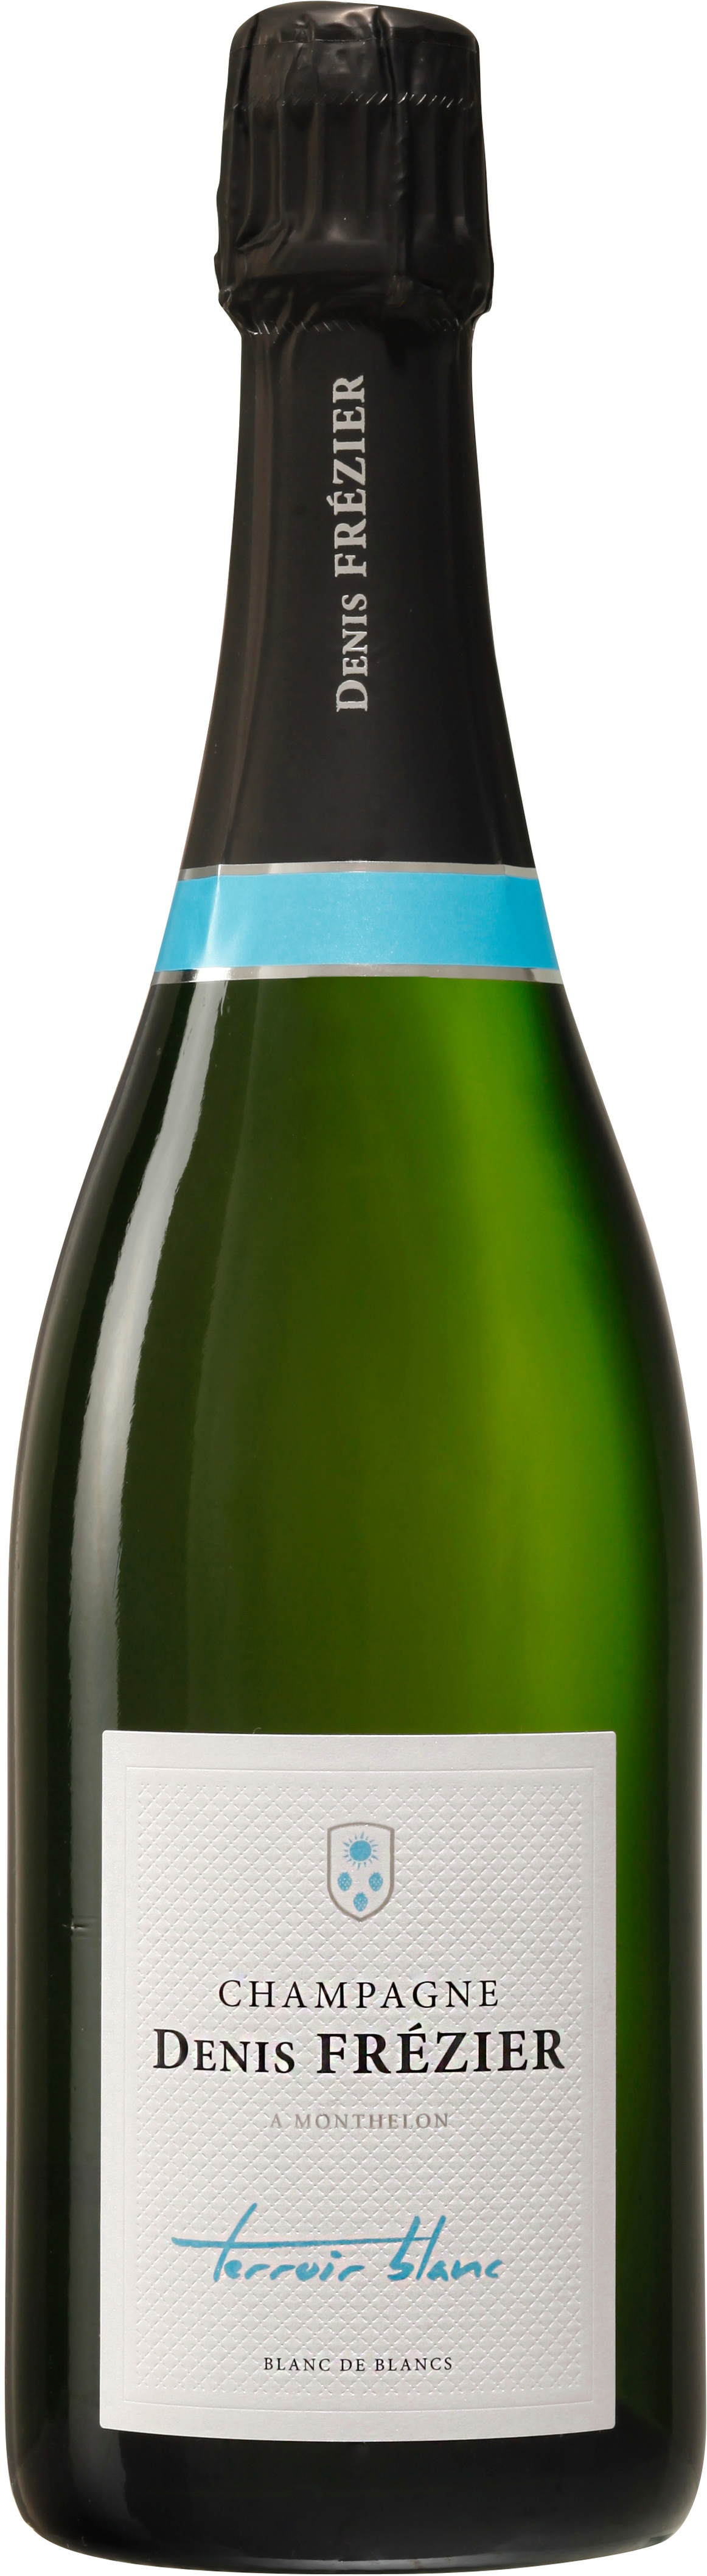 Terroir Blanc Brut - Champagne Denis Frézier